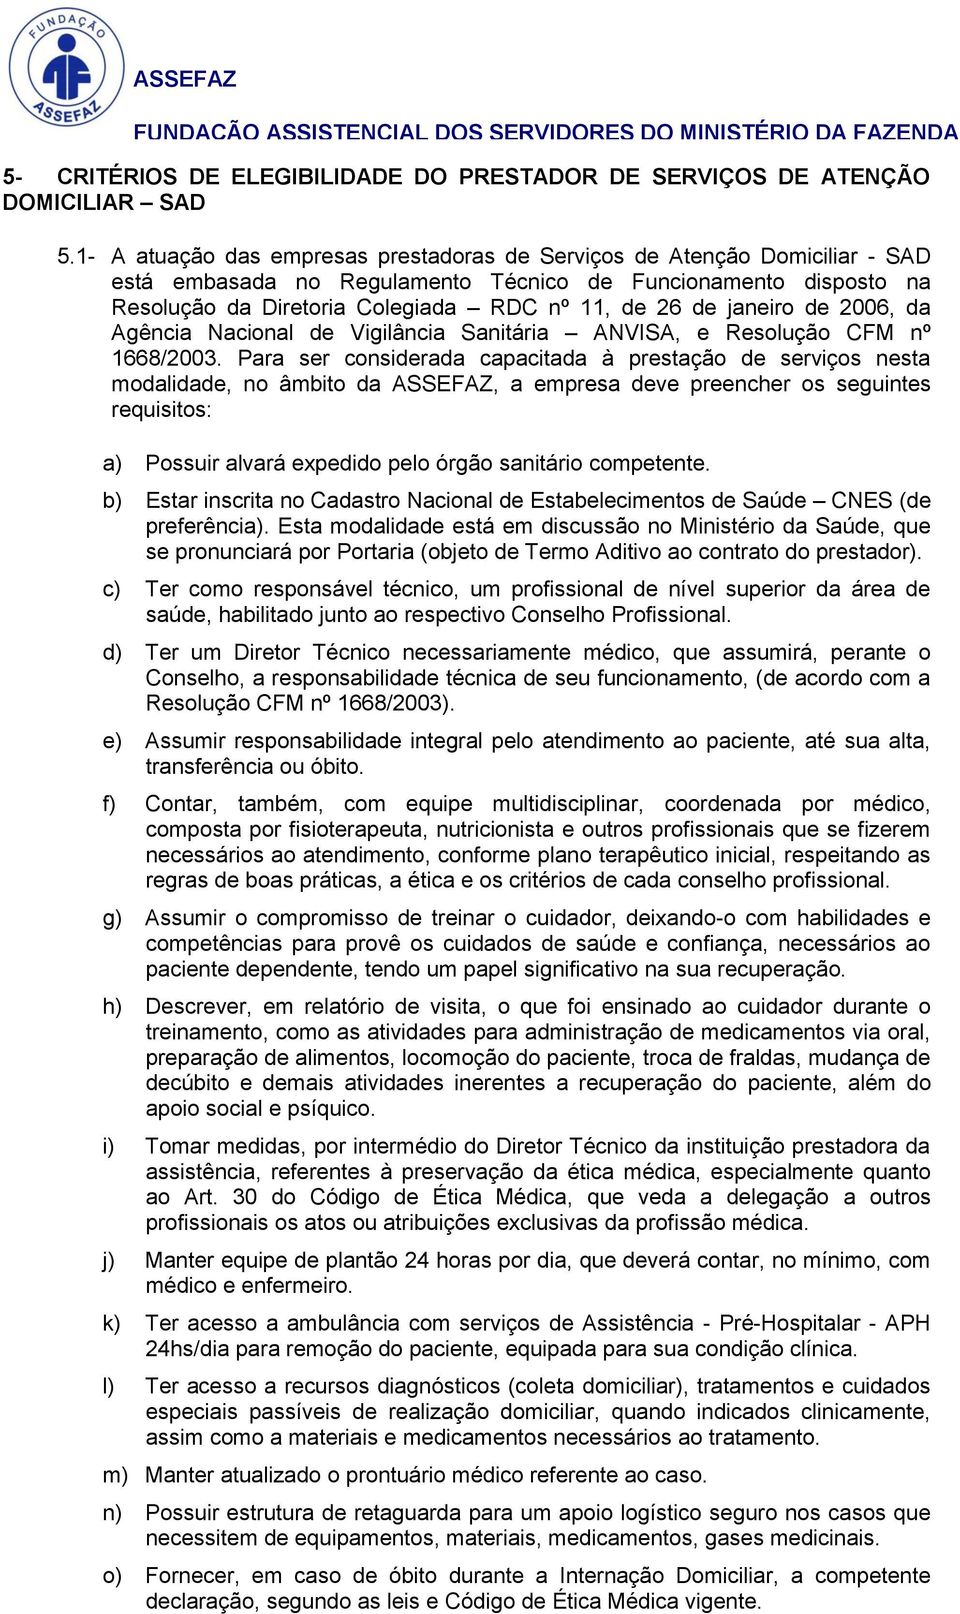 janeiro de 2006, da Agência Nacional de Vigilância Sanitária ANVISA, e Resolução CFM nº 1668/2003.